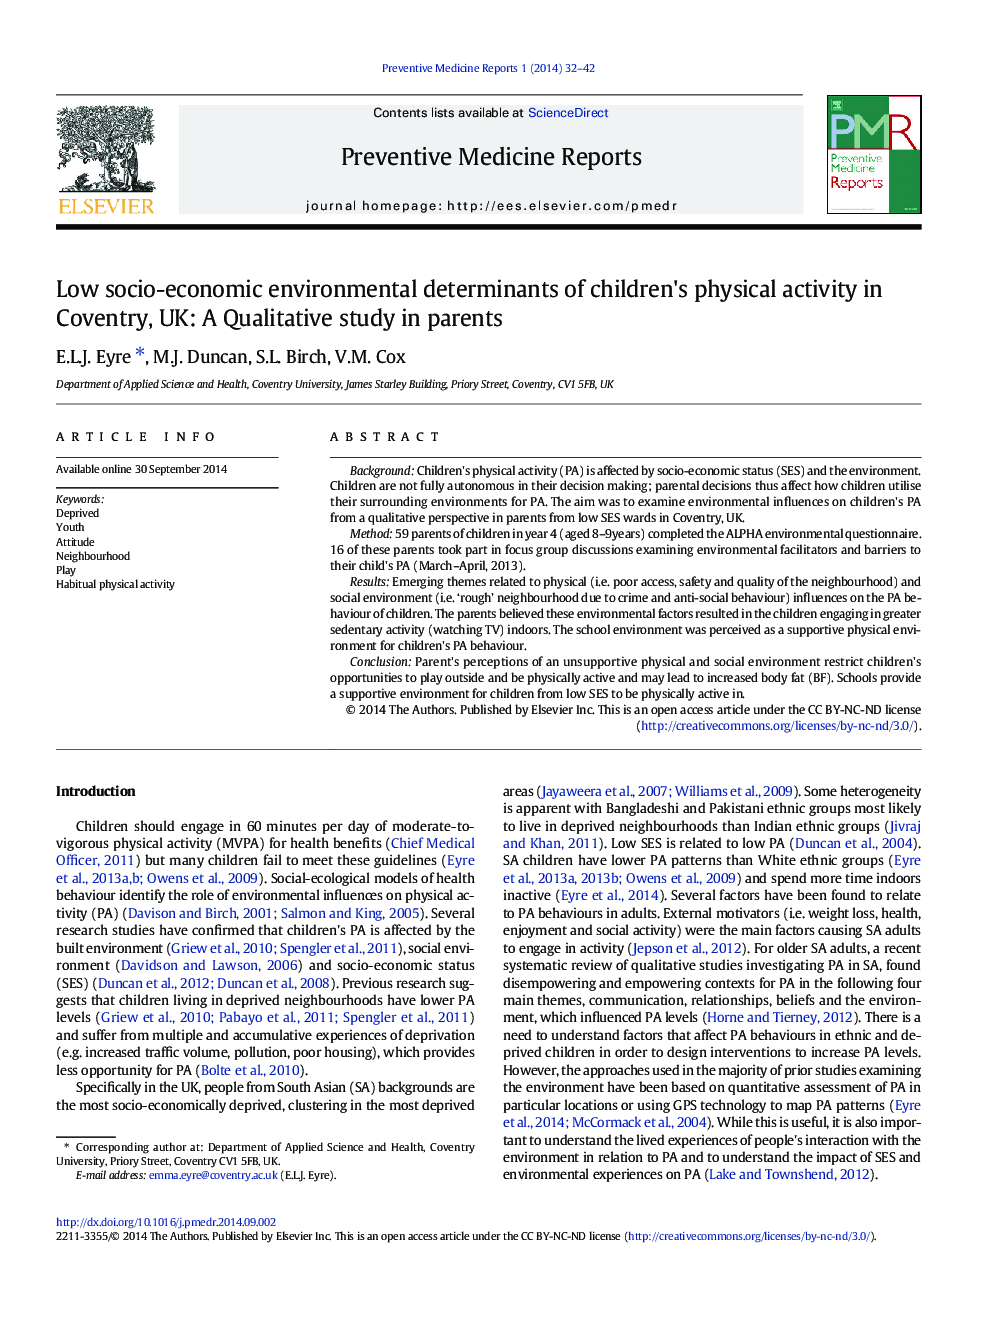 عوامل محیطی کم اجتماعی و اقتصادی محیطی فعالیت بدنی کودکان در کولنتری، انگلستان: یک مطالعه کیفی در والدین 